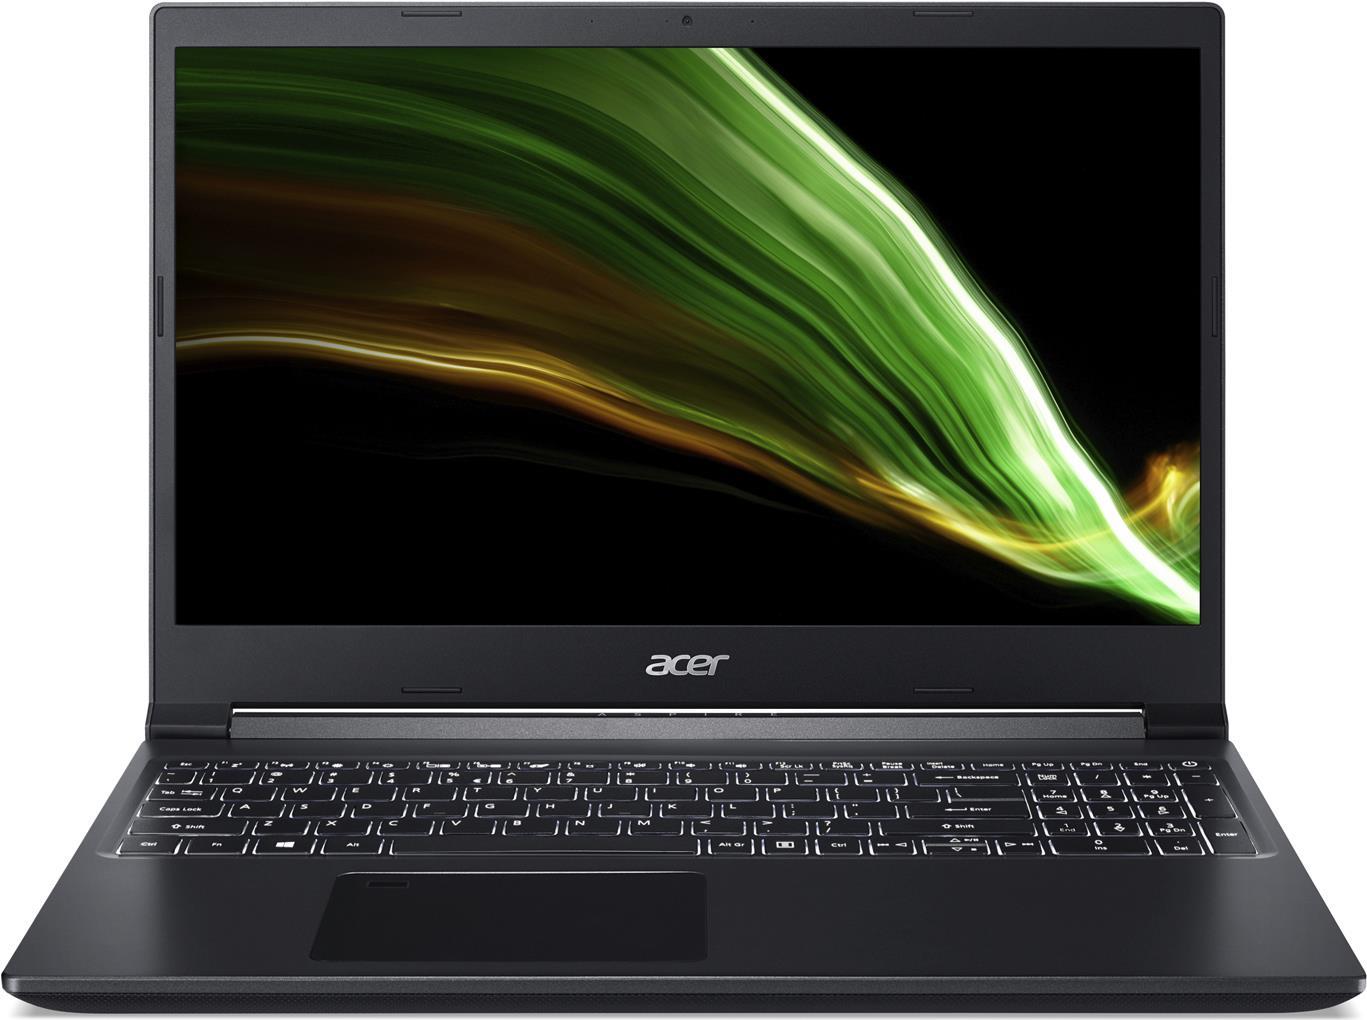 Acer Aspire 7 A715-42G-R4W8 - Ryzen 5 5500U / 2.1 GHz - ESHELL - GF GTX 1650 - 8 GB RAM - 512 GB SSD - 39.62 cm (15.6) 1920 x 1080 (Full HD) - Wi-Fi 6 - Charcoal Black - kbd: Deutsch